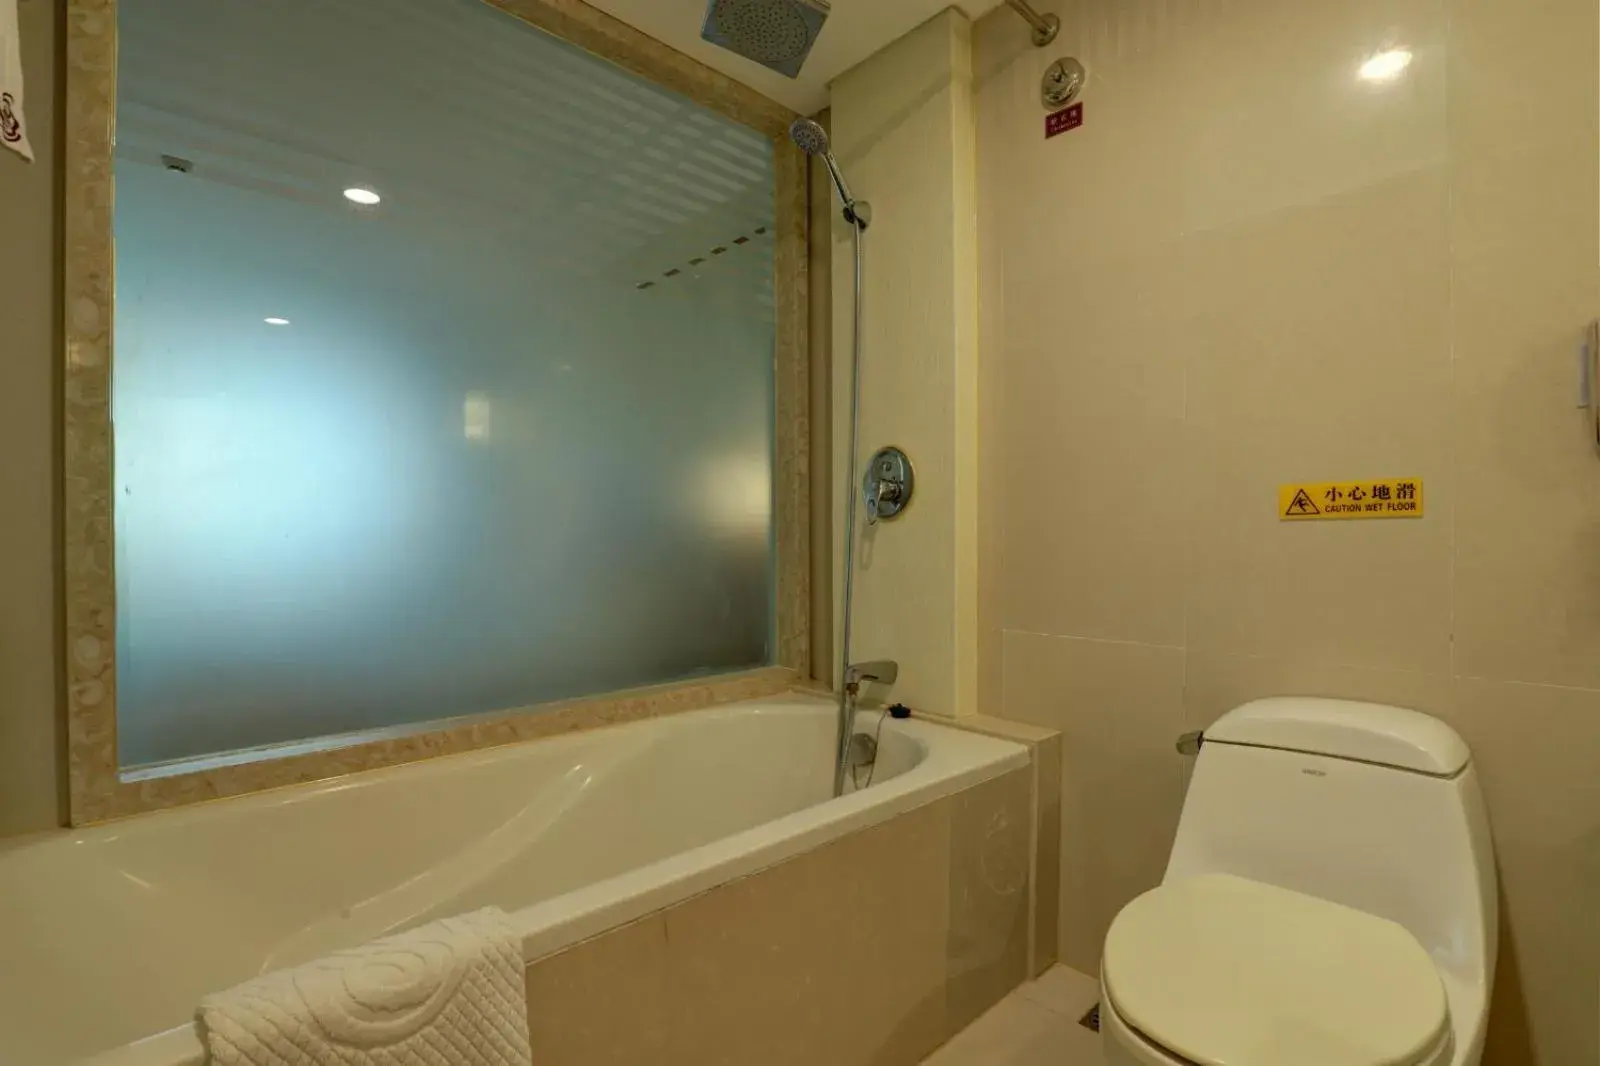 Bathroom in Oscar Hotel